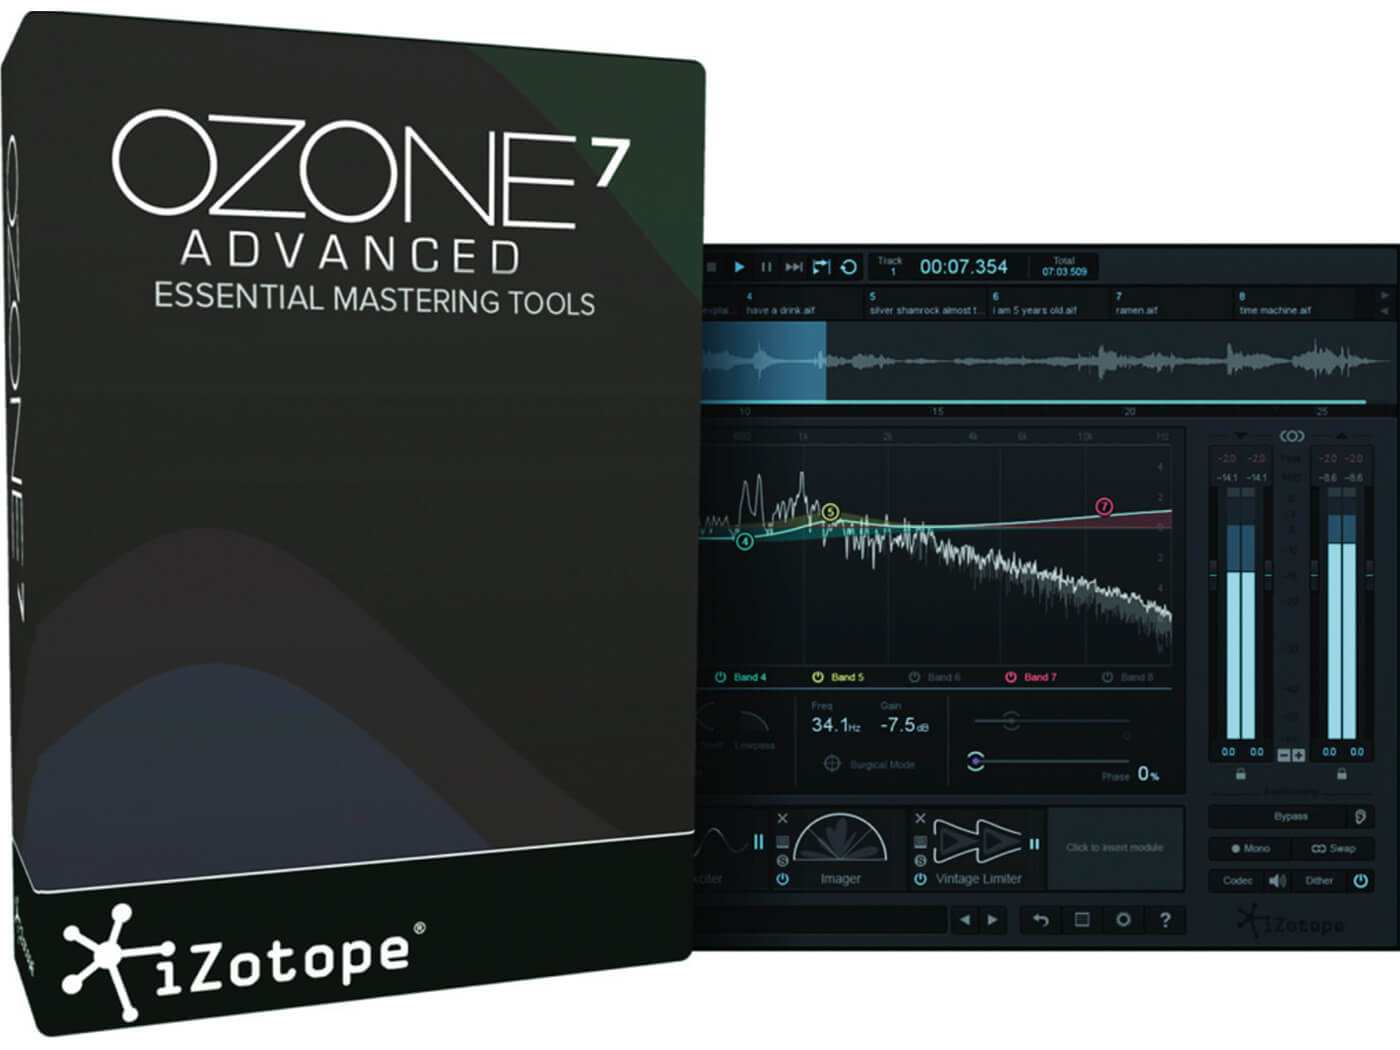 GOTD iZotope Ozone 7